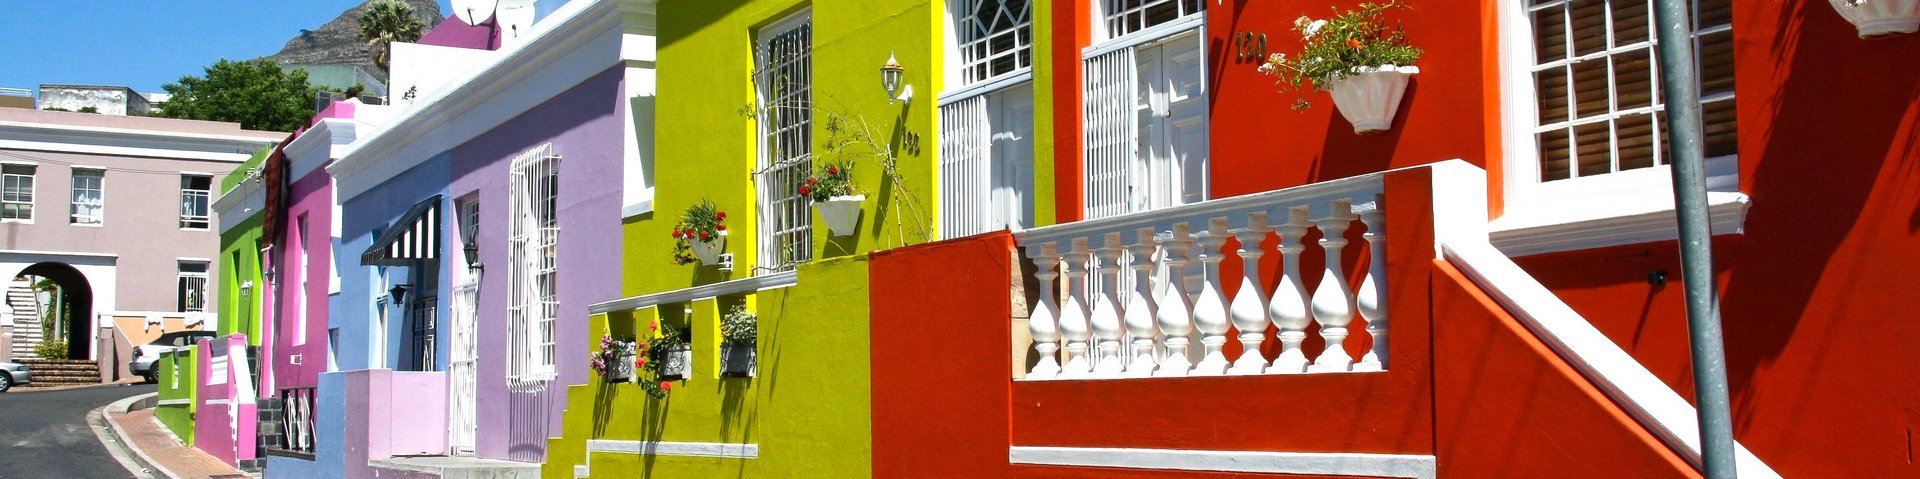 Bunt angestrichene Häuser im Stadtteil Bo-Kaap in Kapstadt